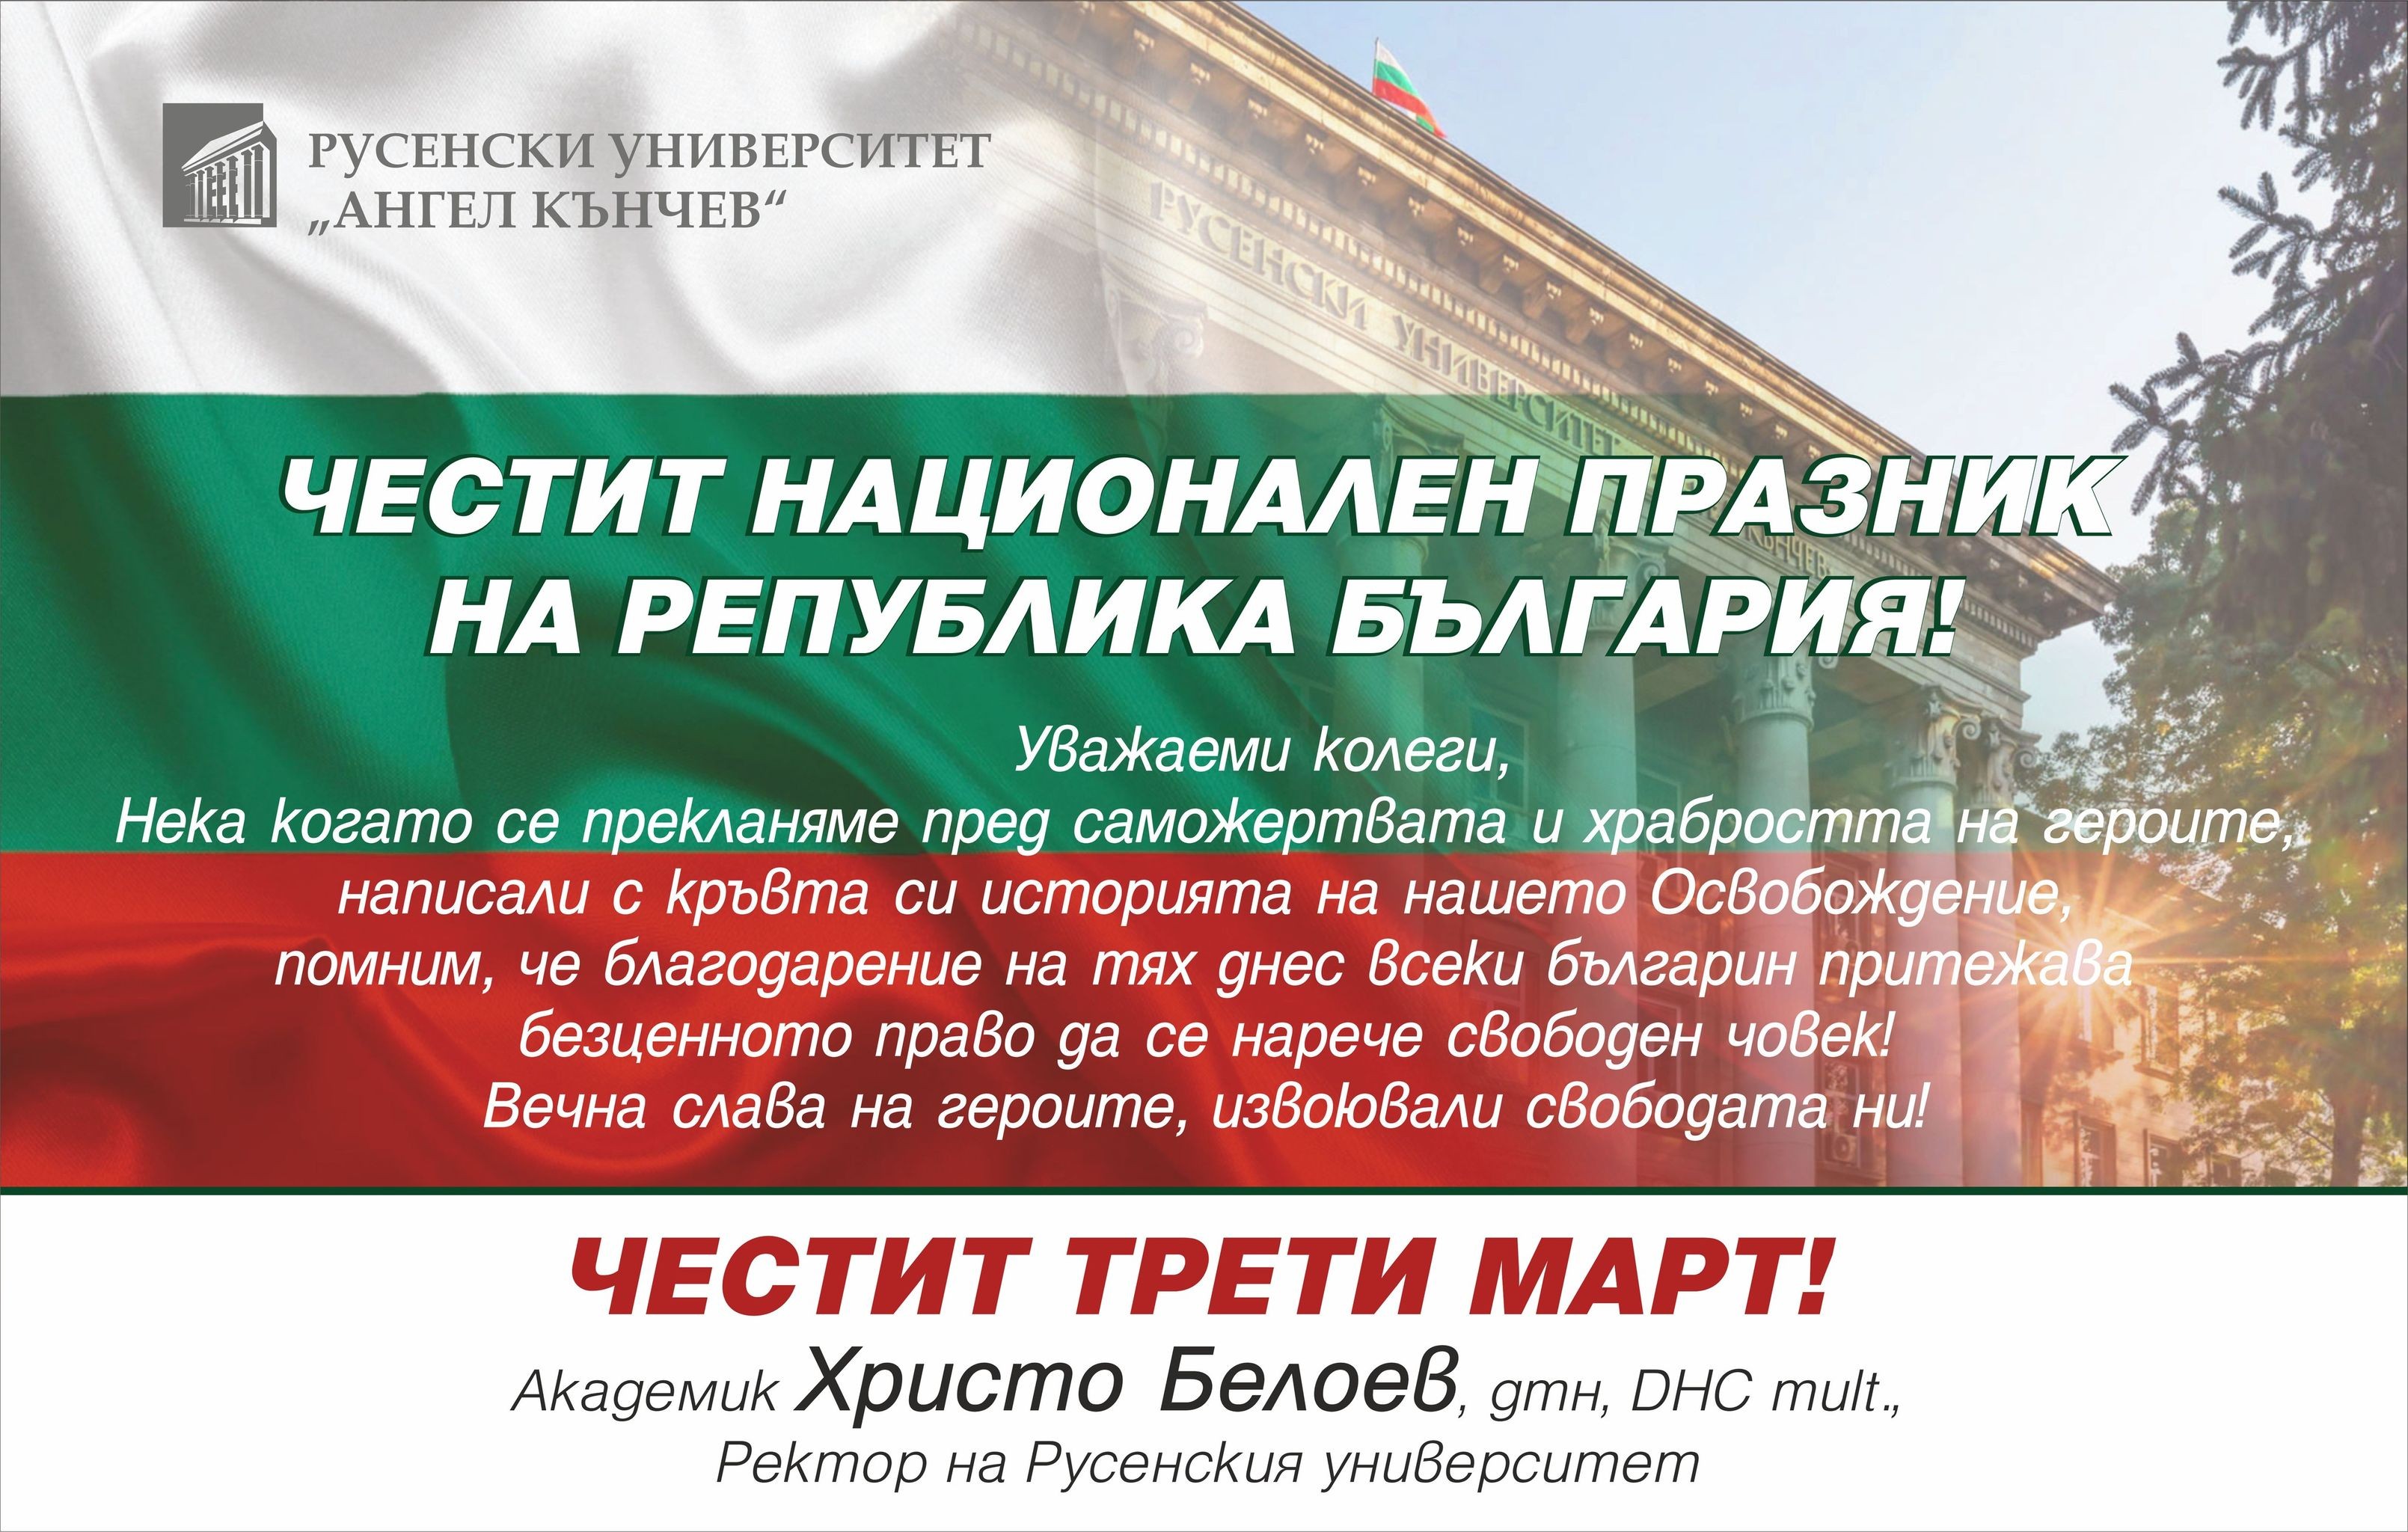    Честит Трети март! Честит национален празник на Република България!